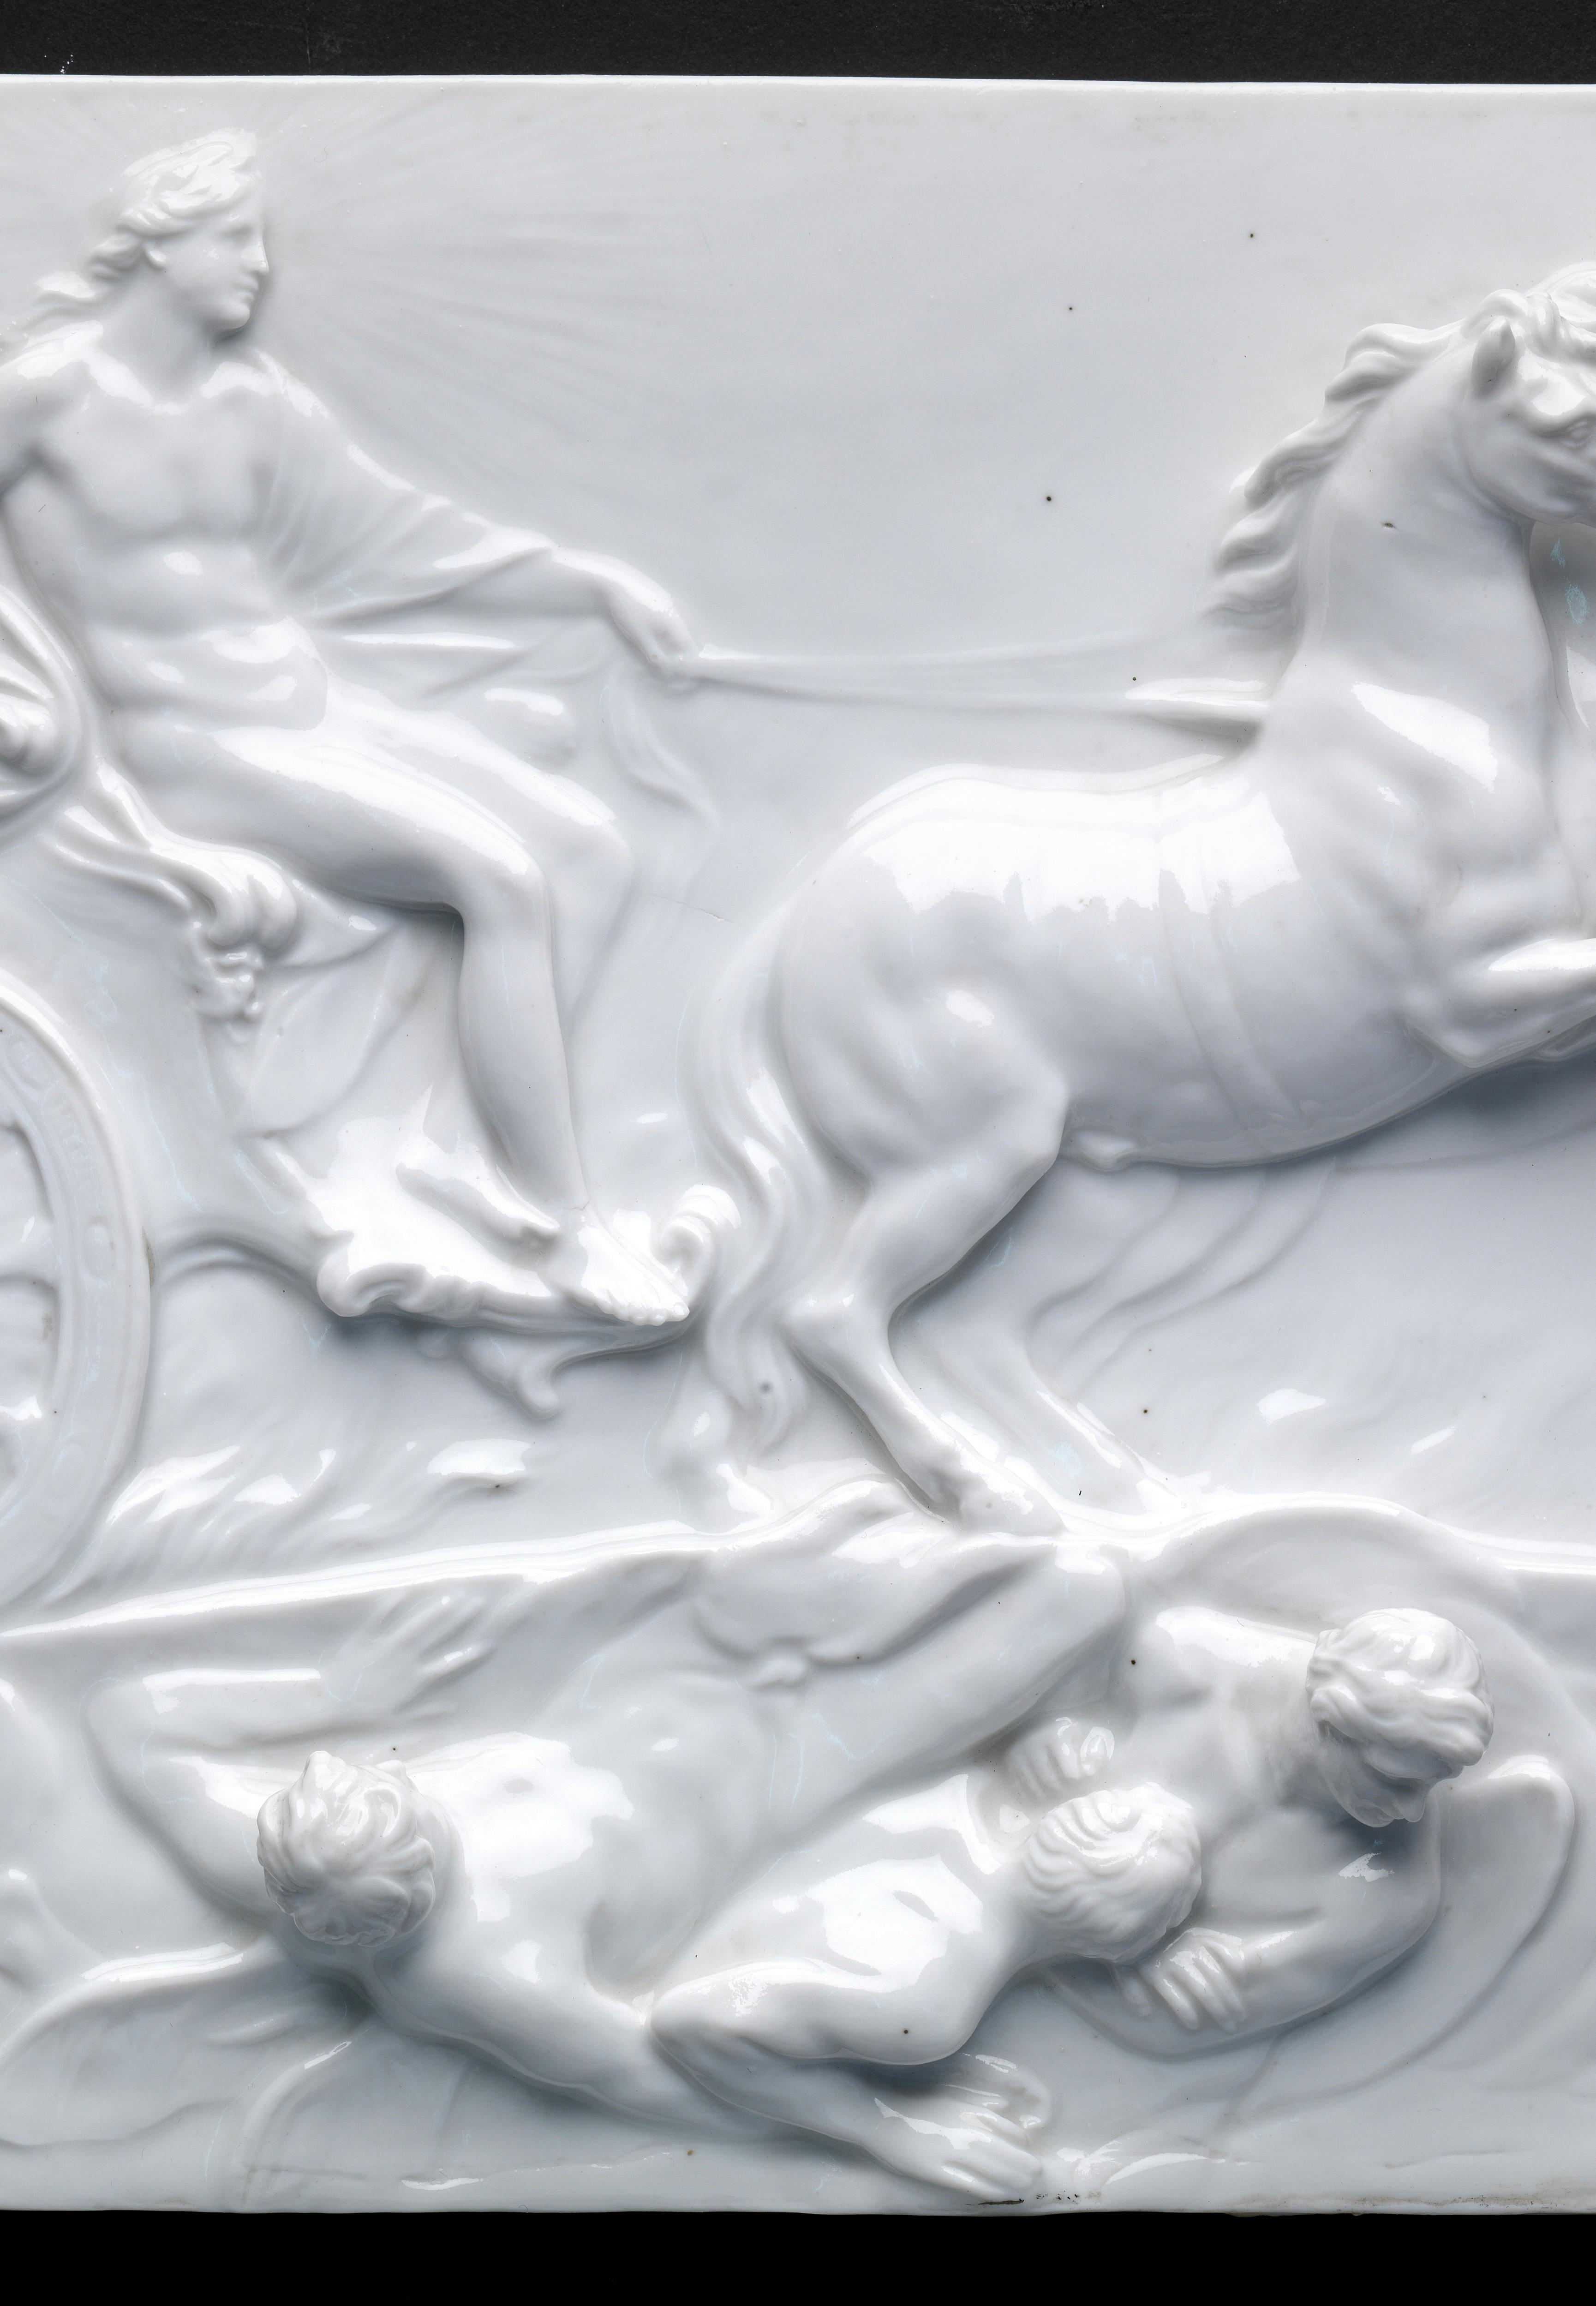 Lastra in porcellana bianca con in rilievo una figura maschile che guida un carro trainato da due cavalli